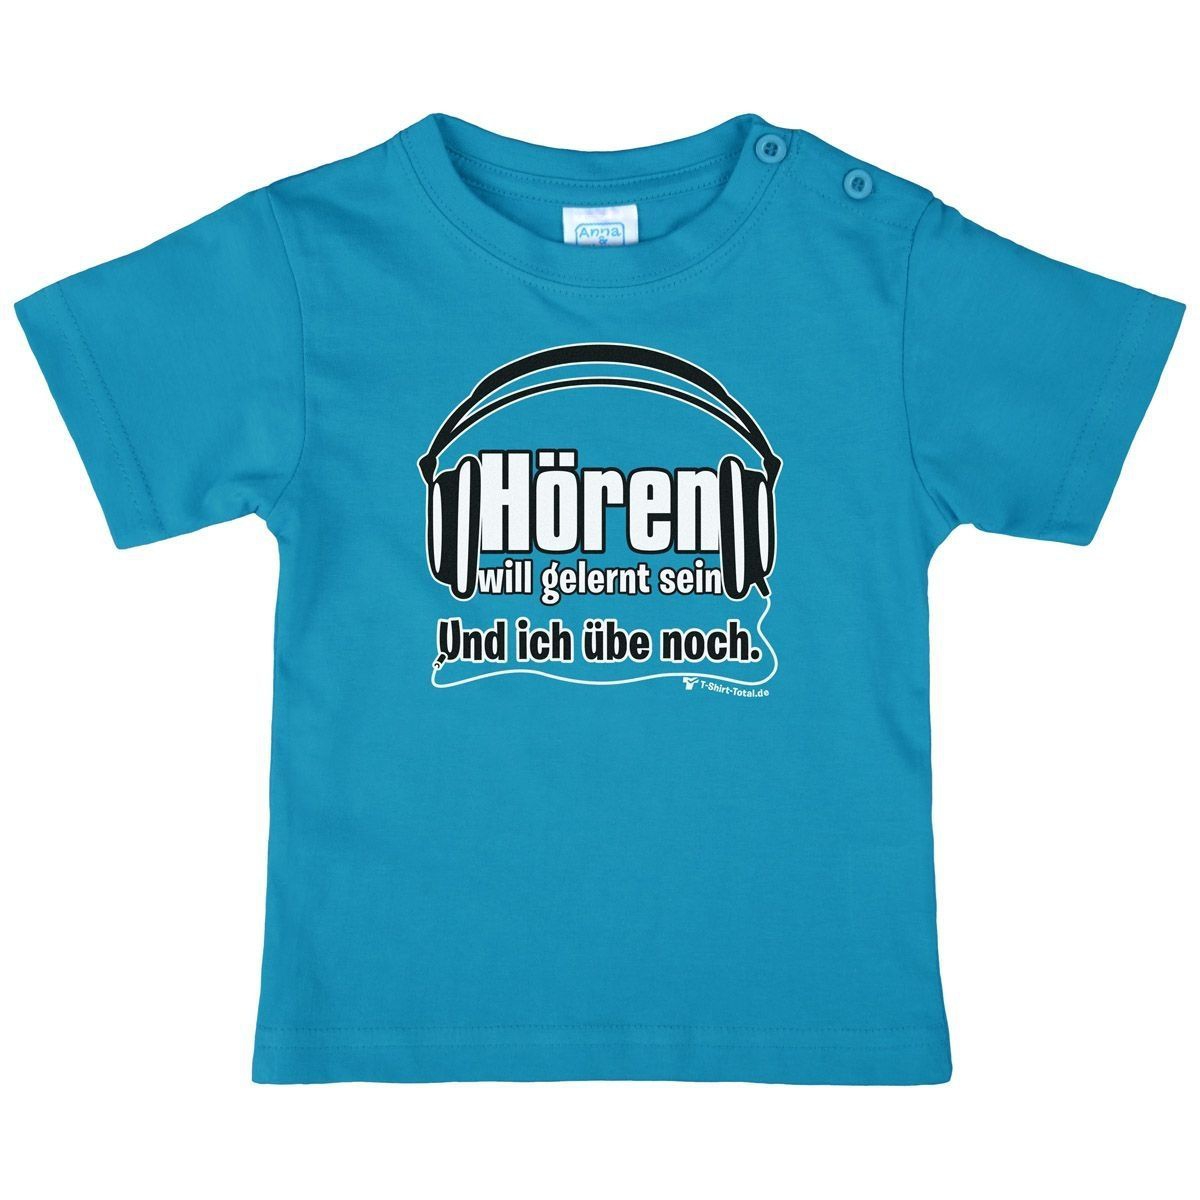 Hören will gelernt sein Kinder T-Shirt türkis 104